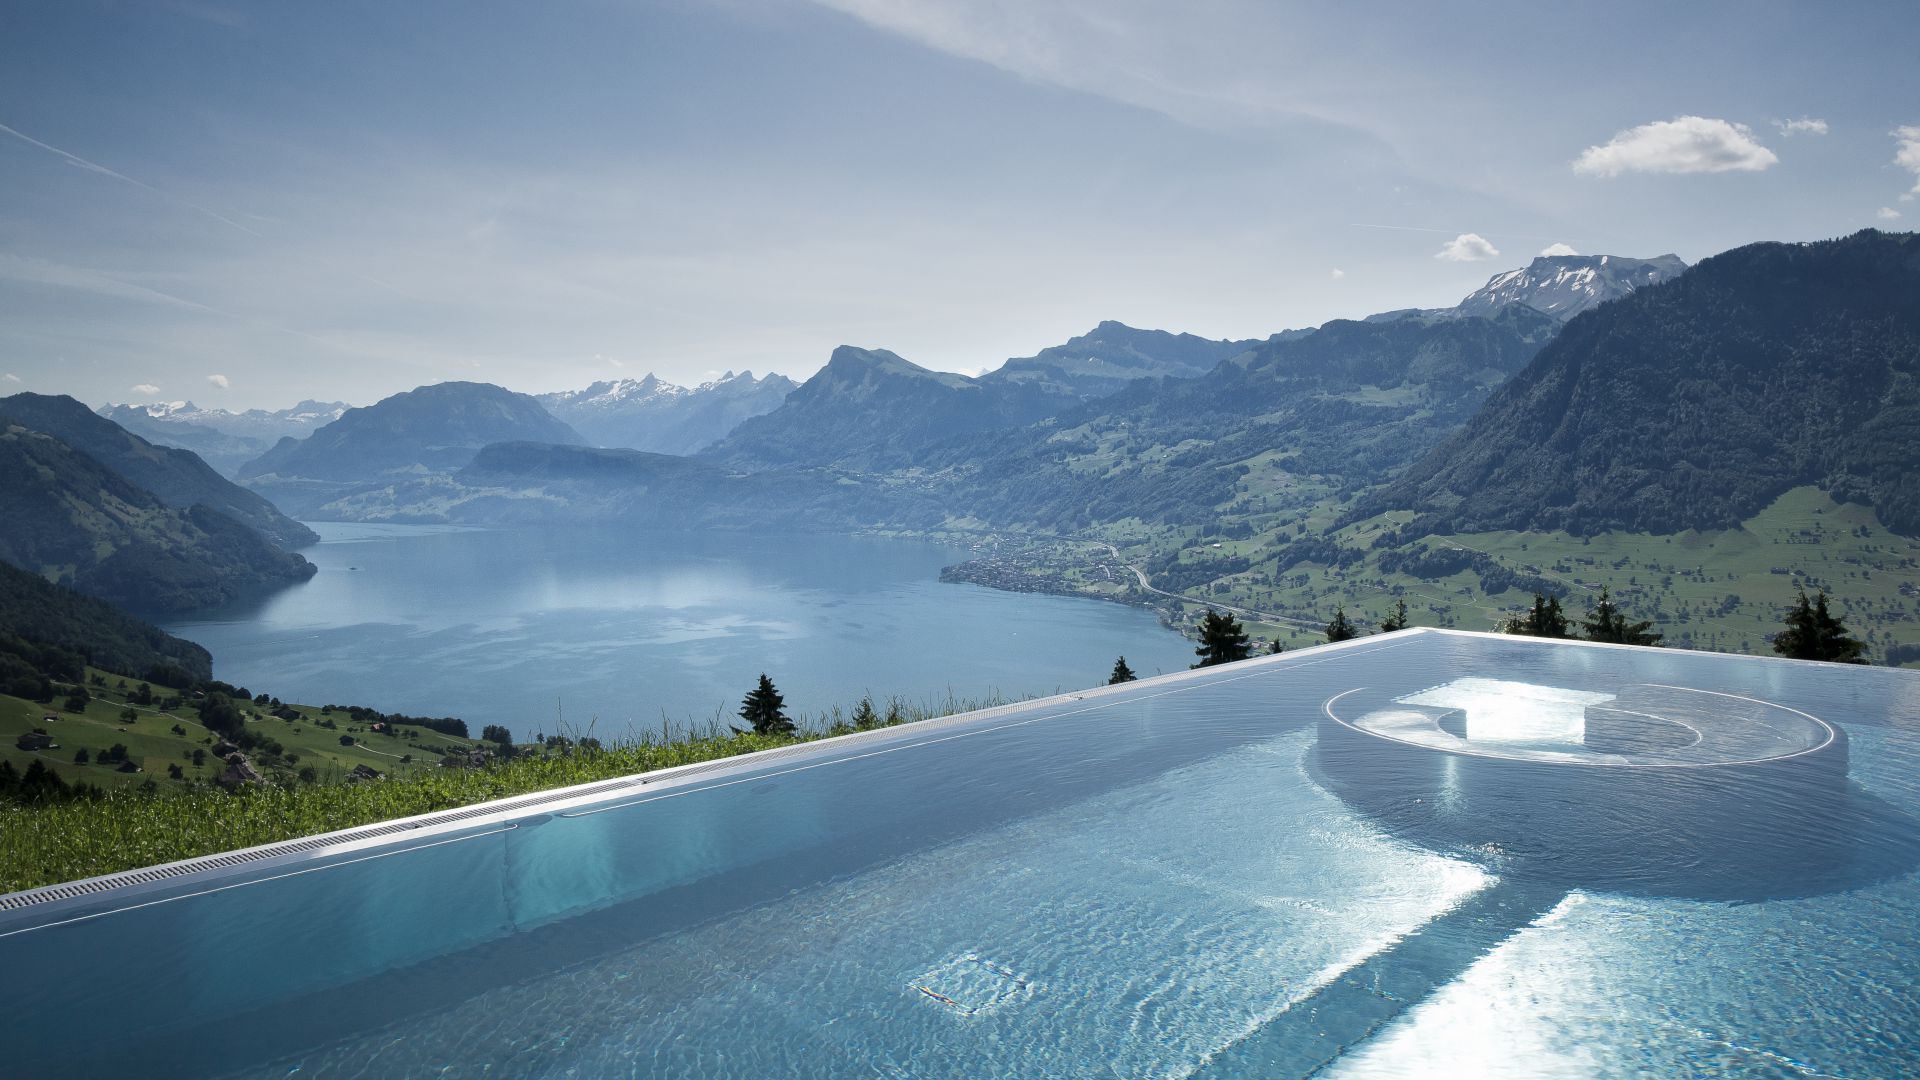 Hotel Villa Honegg, 5k, 4k wallpaper, 8k, Bürgenstock, Switzerland, infinity pool, pool, travel, tourism (horizontal)